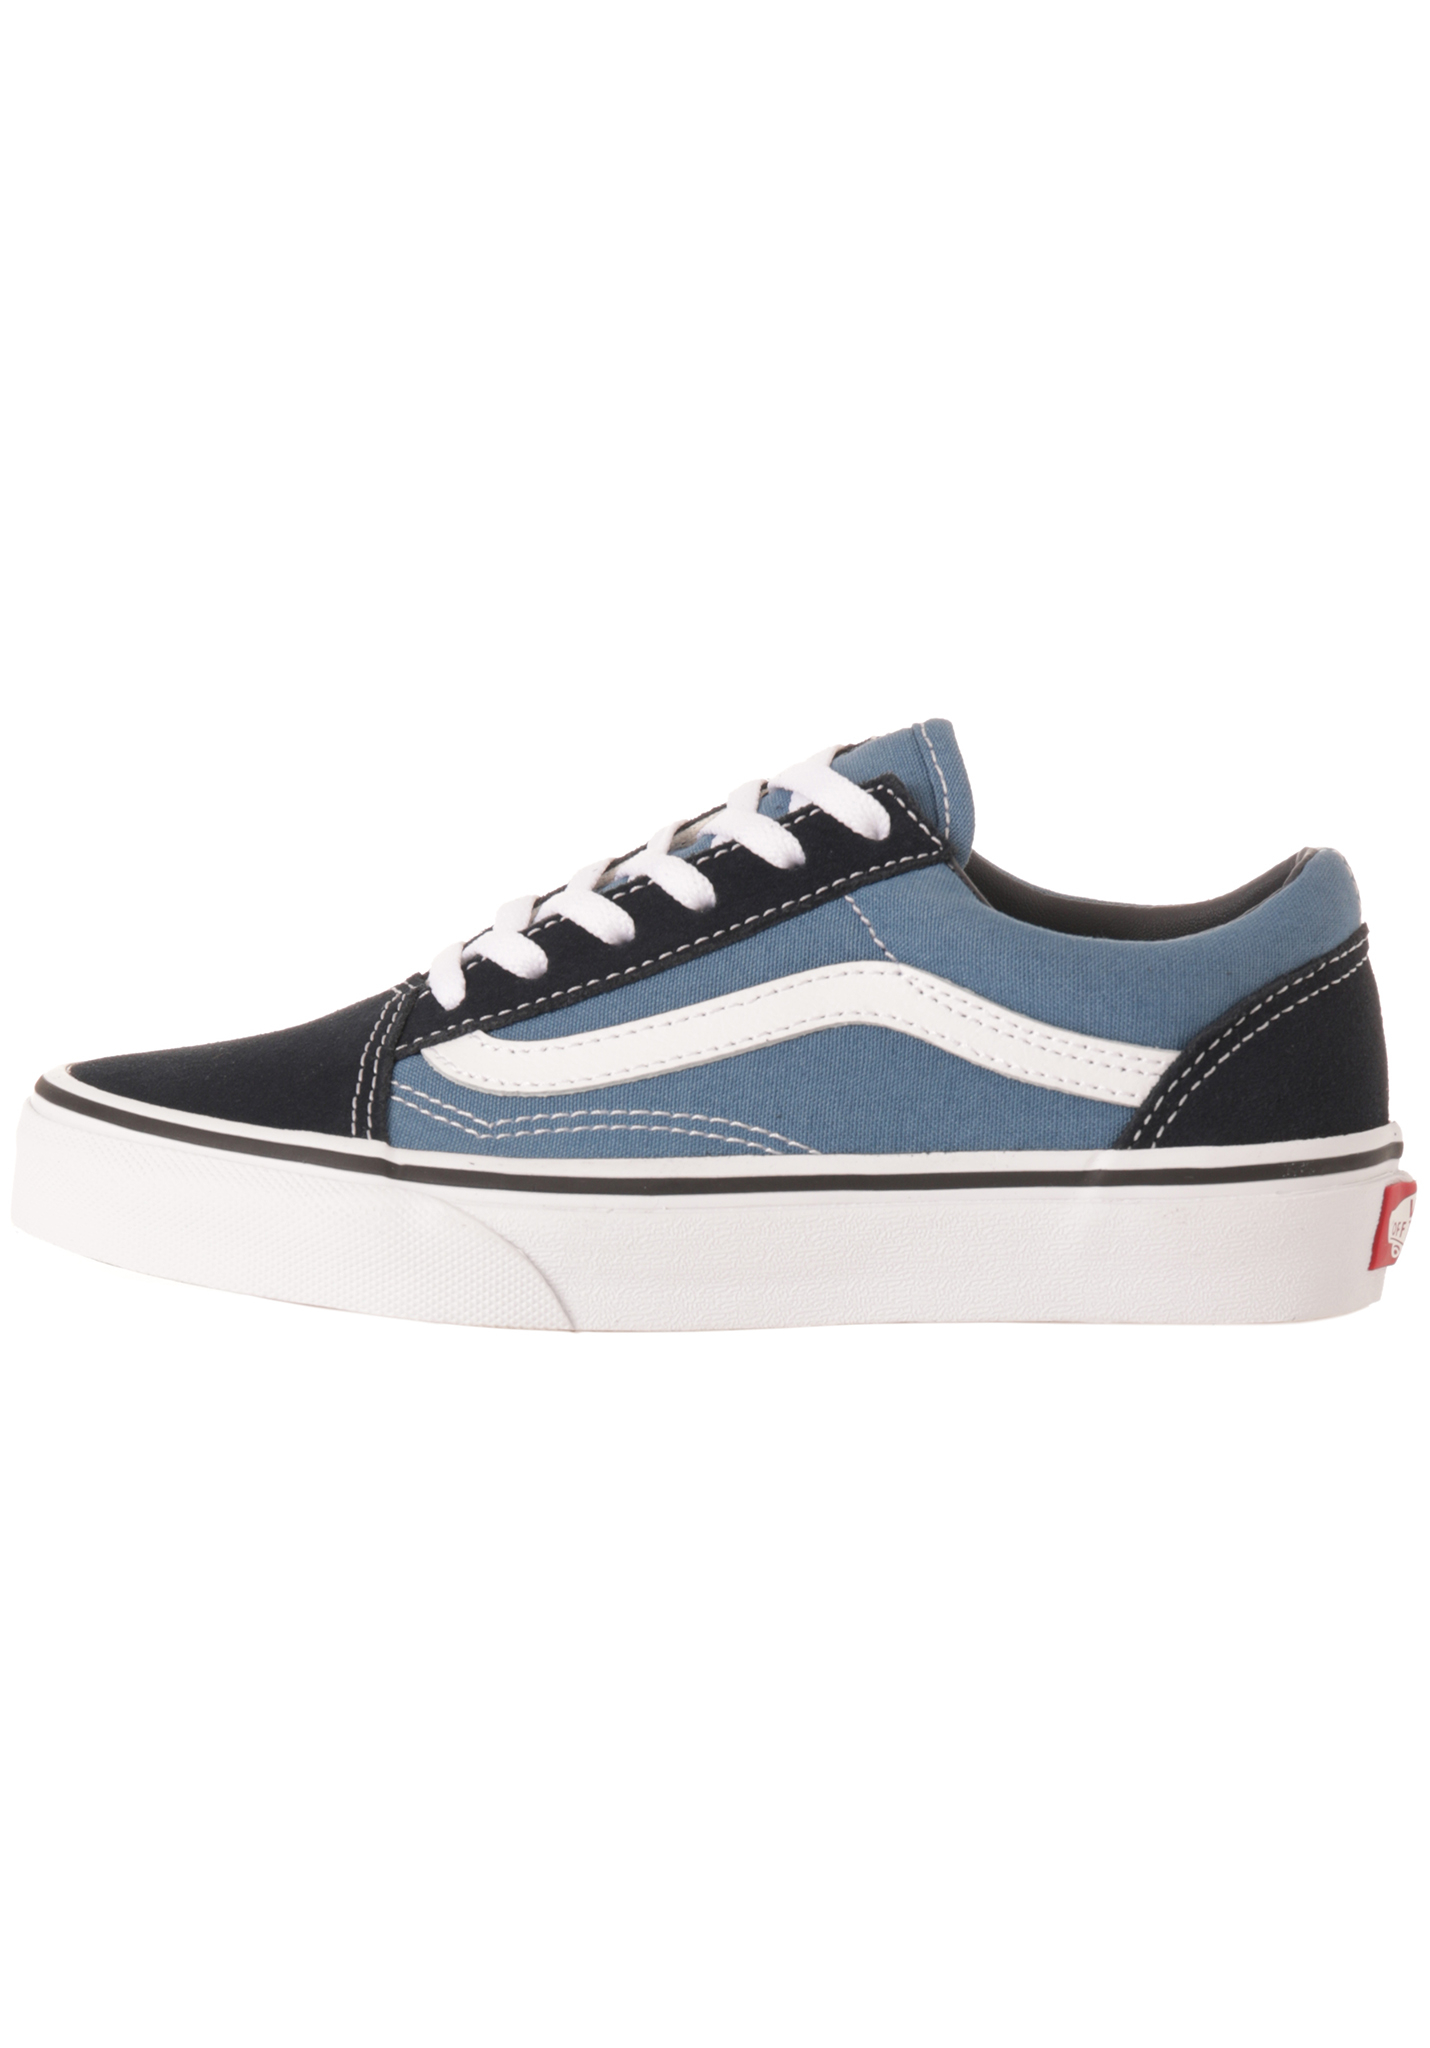 Vans Old Skool Sneaker Low marineblau/true white 32,5